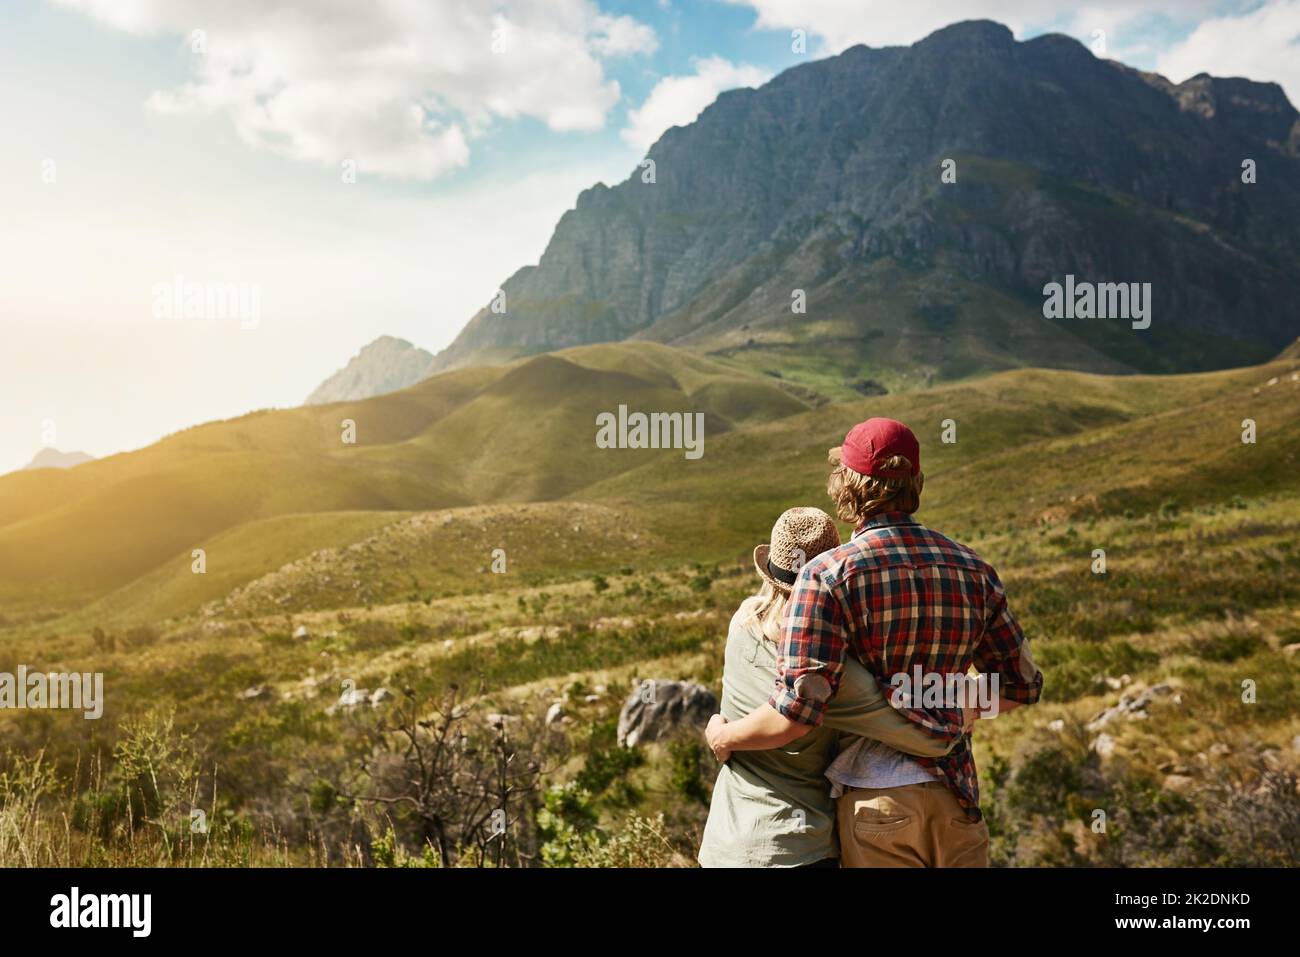 Hanno trovato il loro posto nel mondo. Foto retrostenibile di una giovane coppia ammirando una vista montagnosa nella natura. Foto Stock